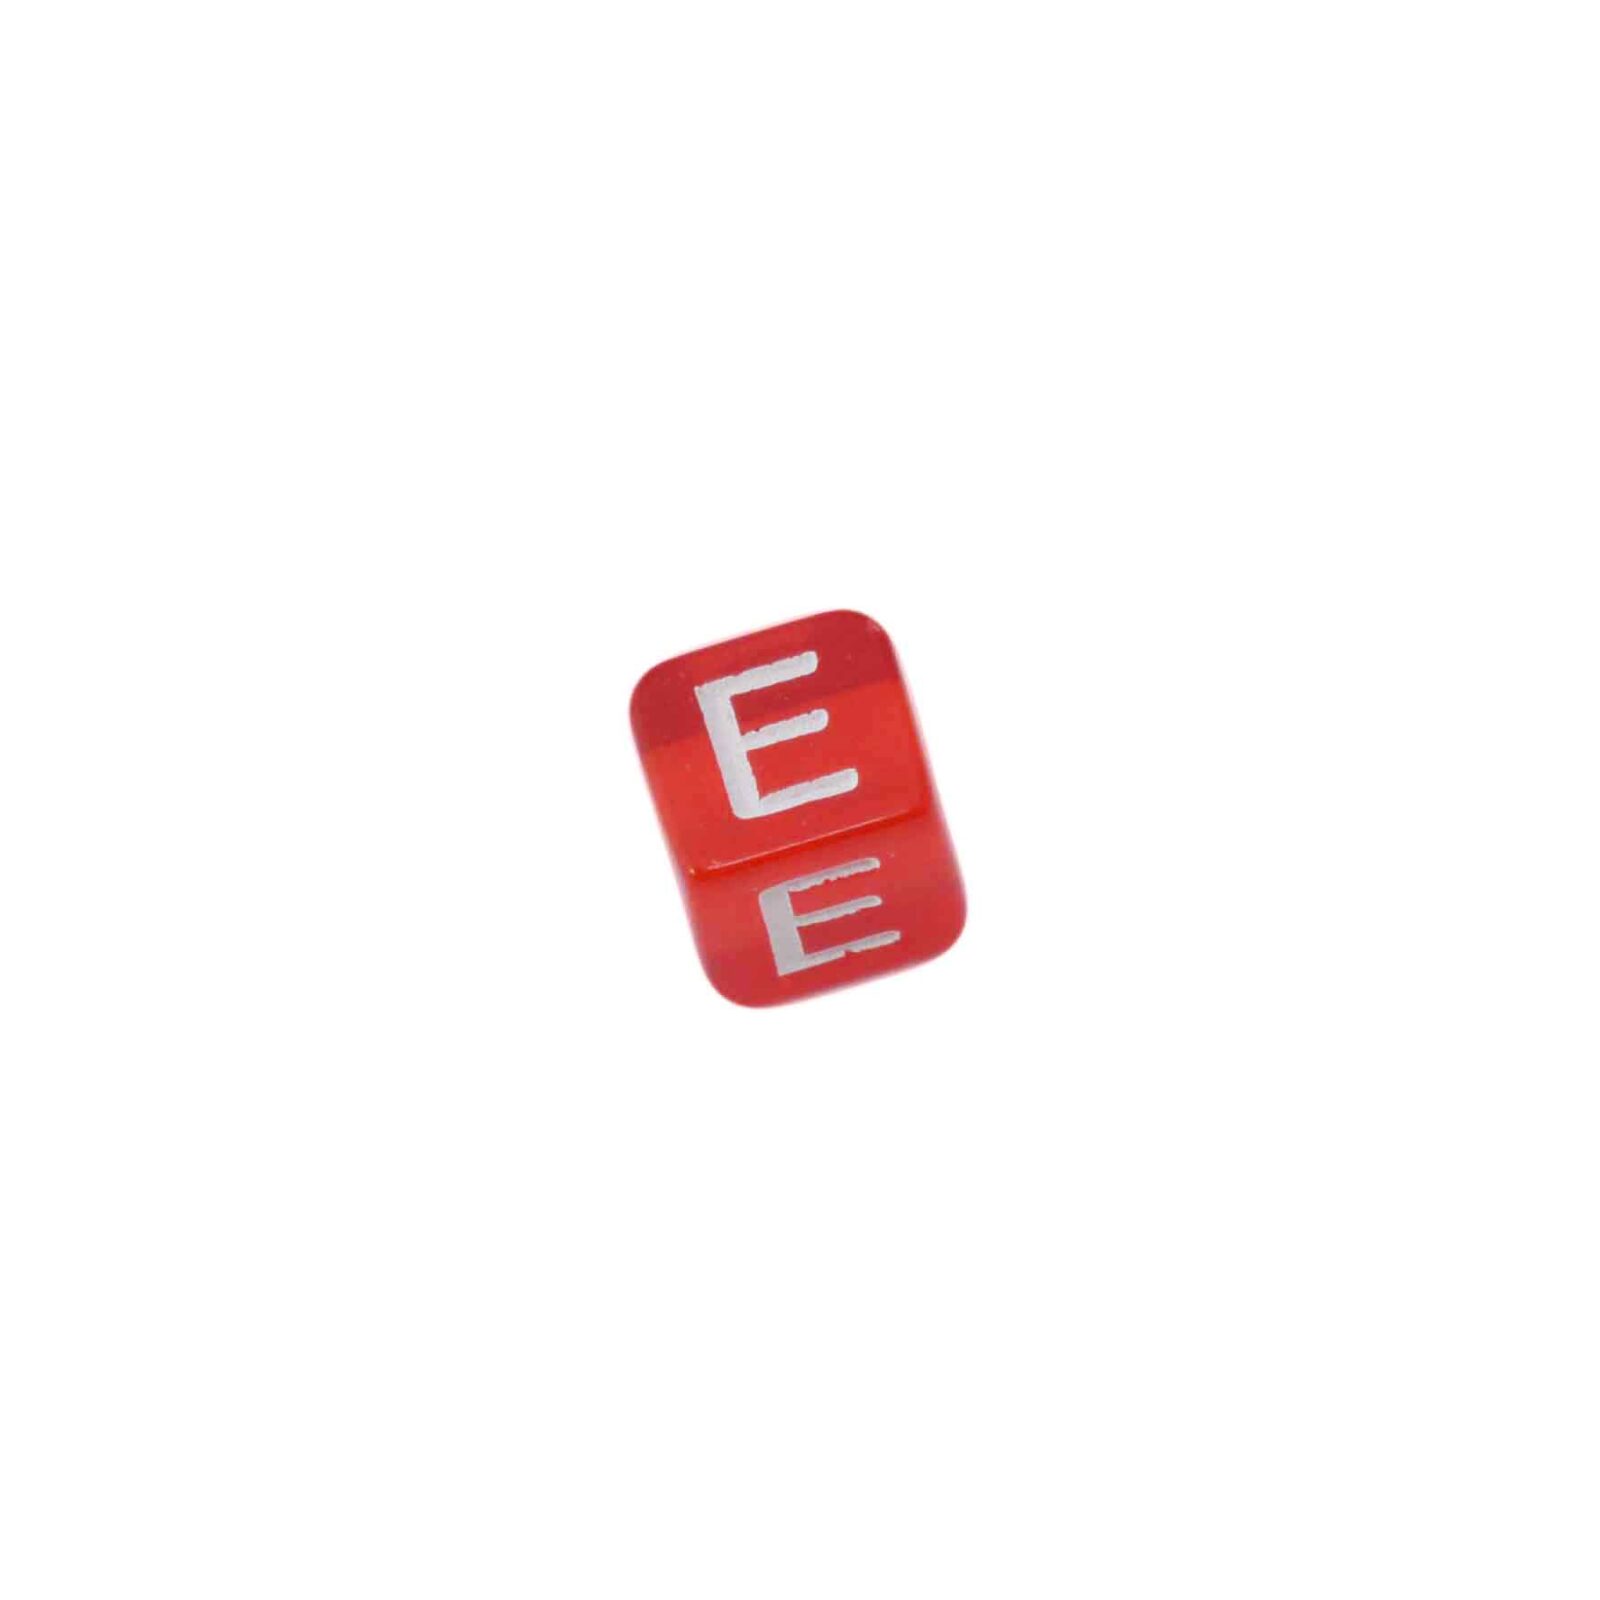 Rode letterkraal E